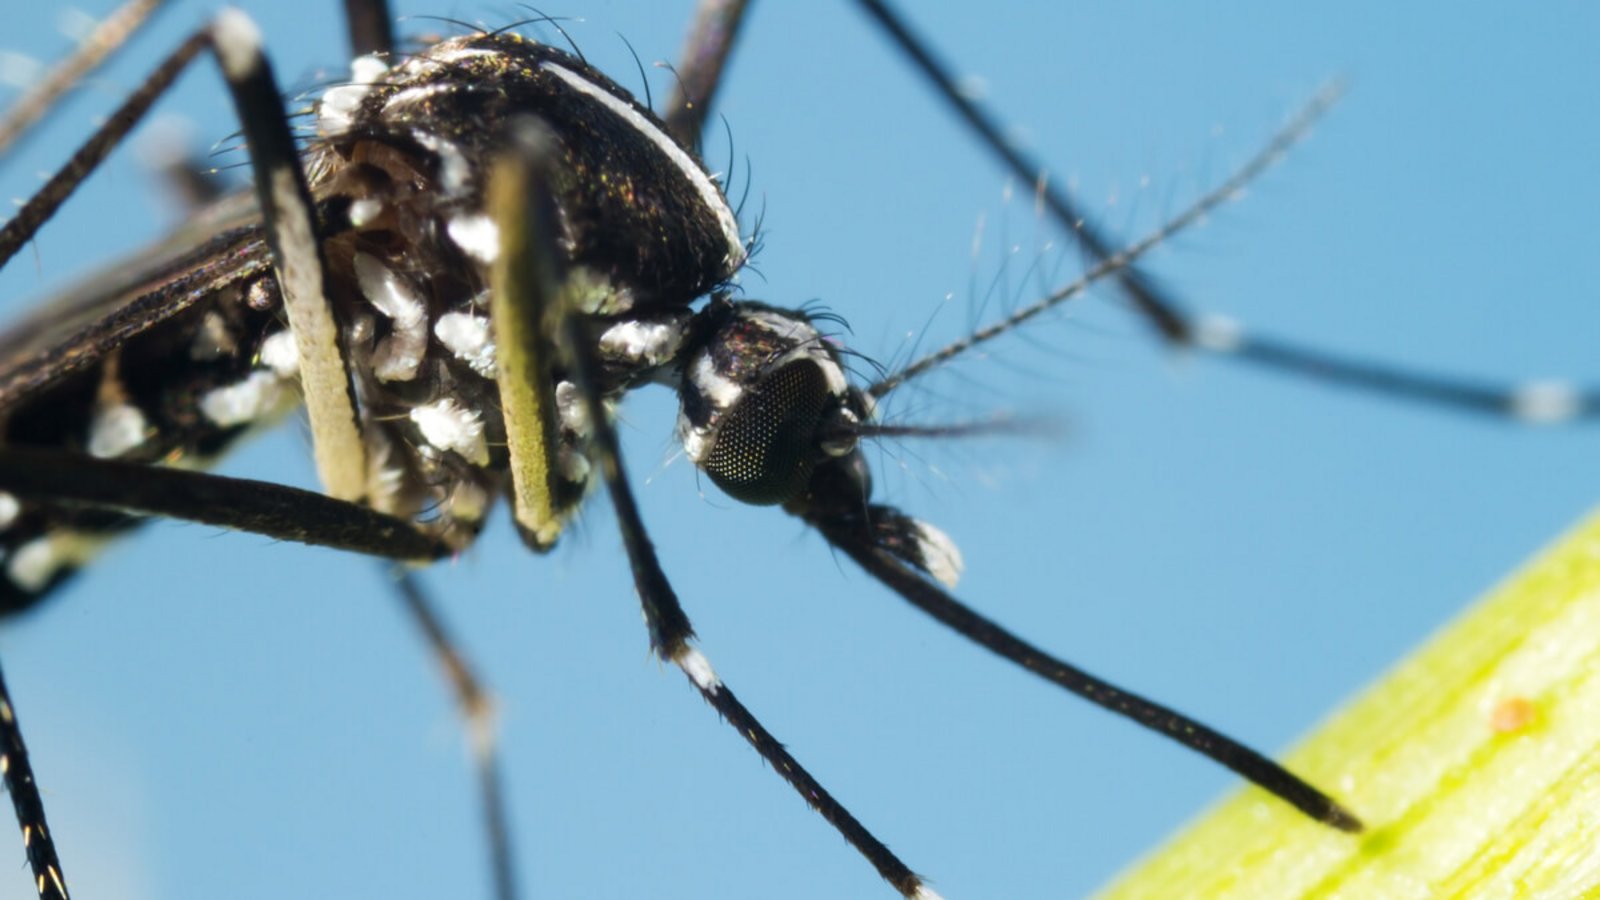 Der Mückenatlas verfolgt die Verbreitung von eingeführten Mückenarten in Deutschland. So können Sie Mücken einschicken und bestimmen lassen.Foto: InsectWorld / Shutterstock.com